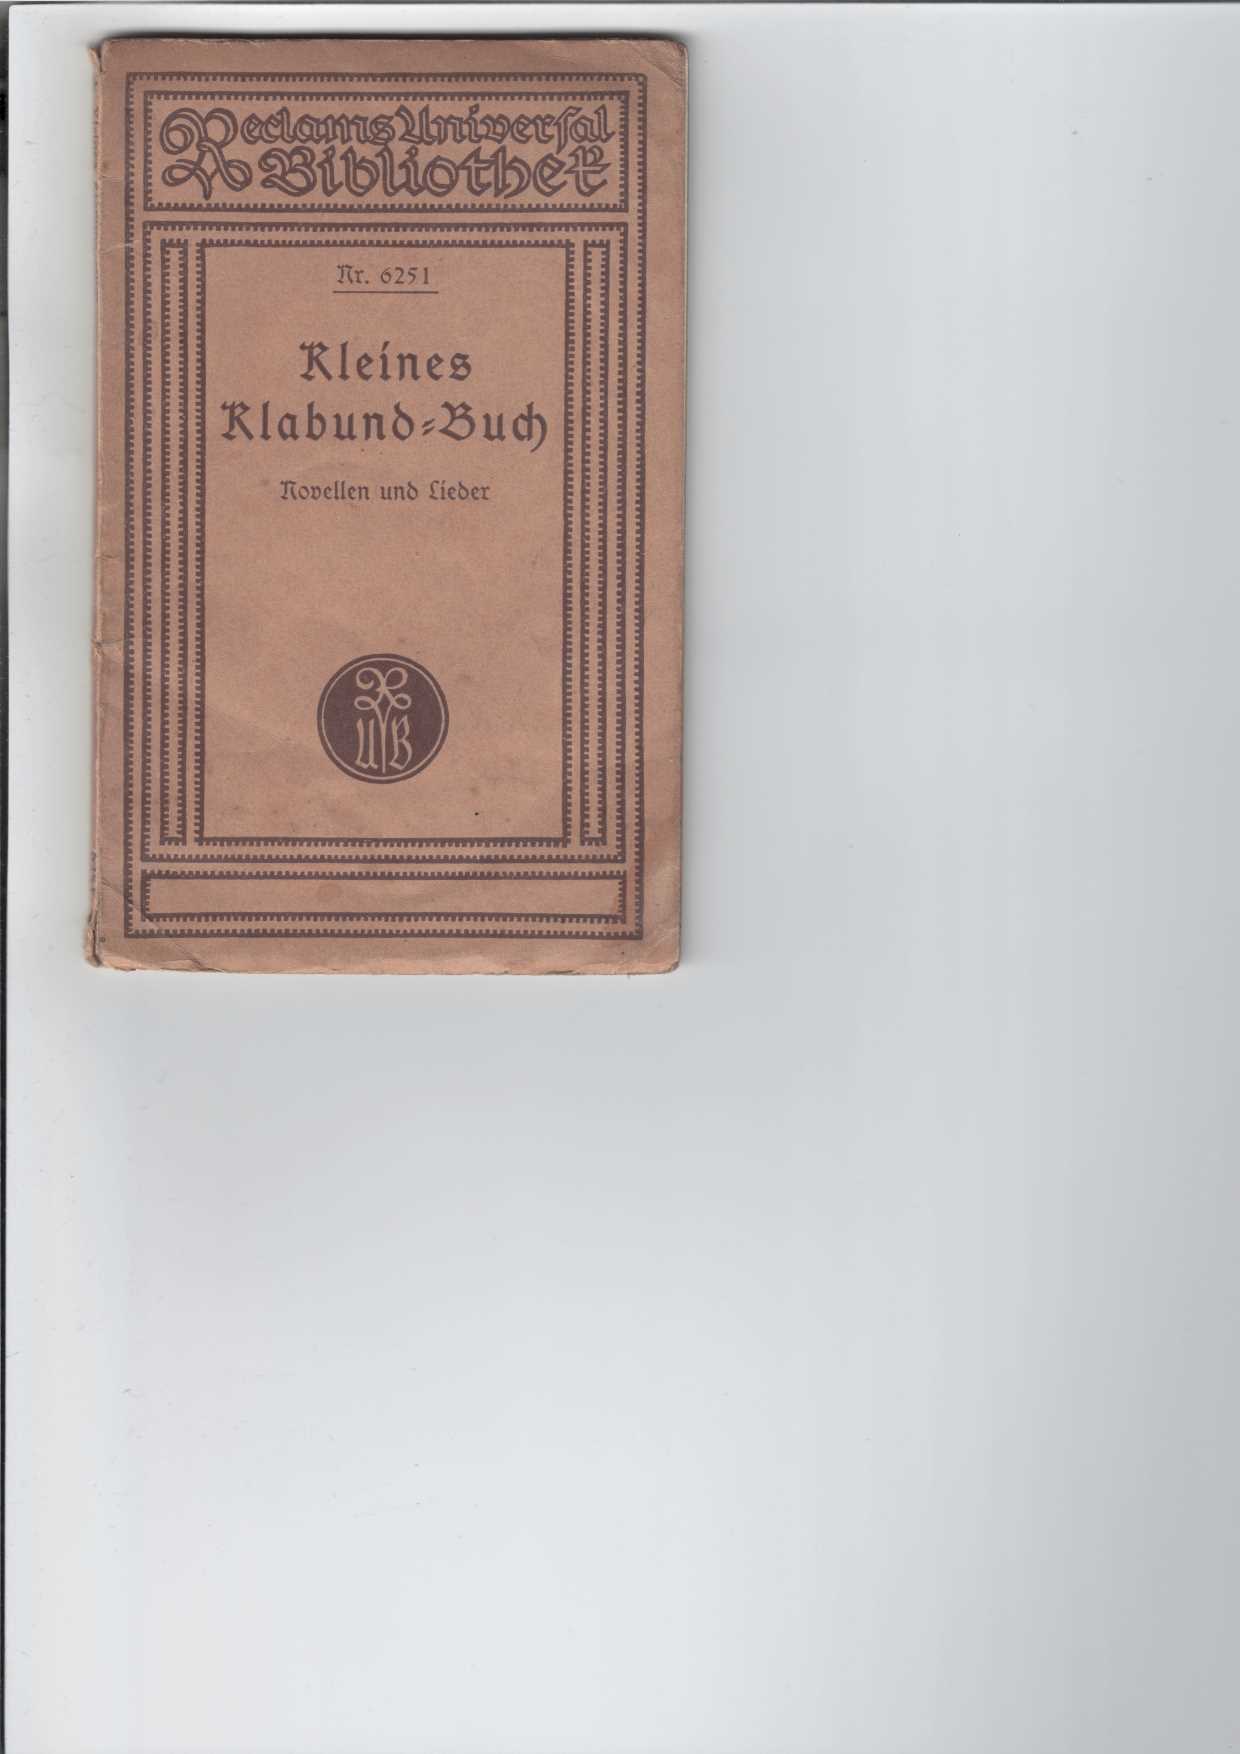 Klabund:  Kleines Klabund-Buch. 